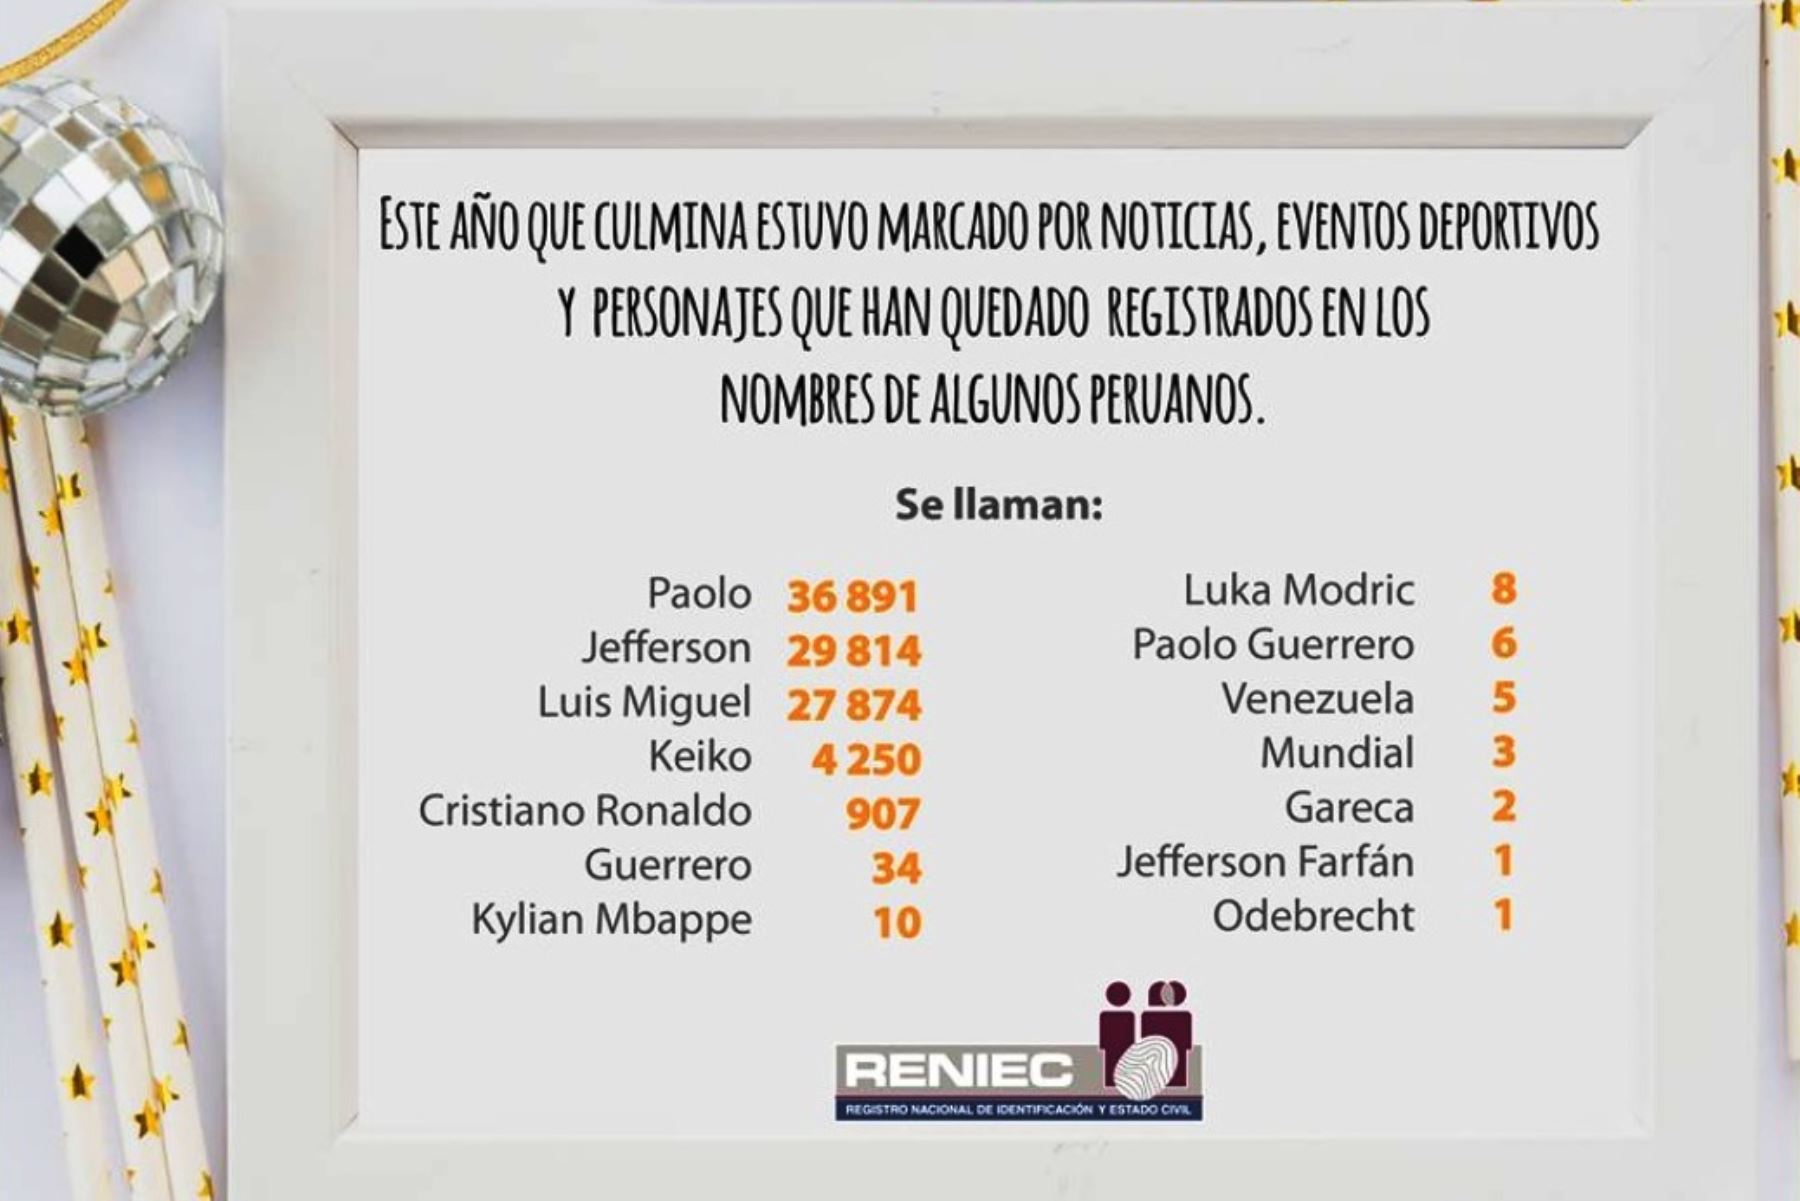 Reniec: peruanos que llevan nombres de personajes y hechos que marcaron el 2018. Foto: ANDINA/Difusión.